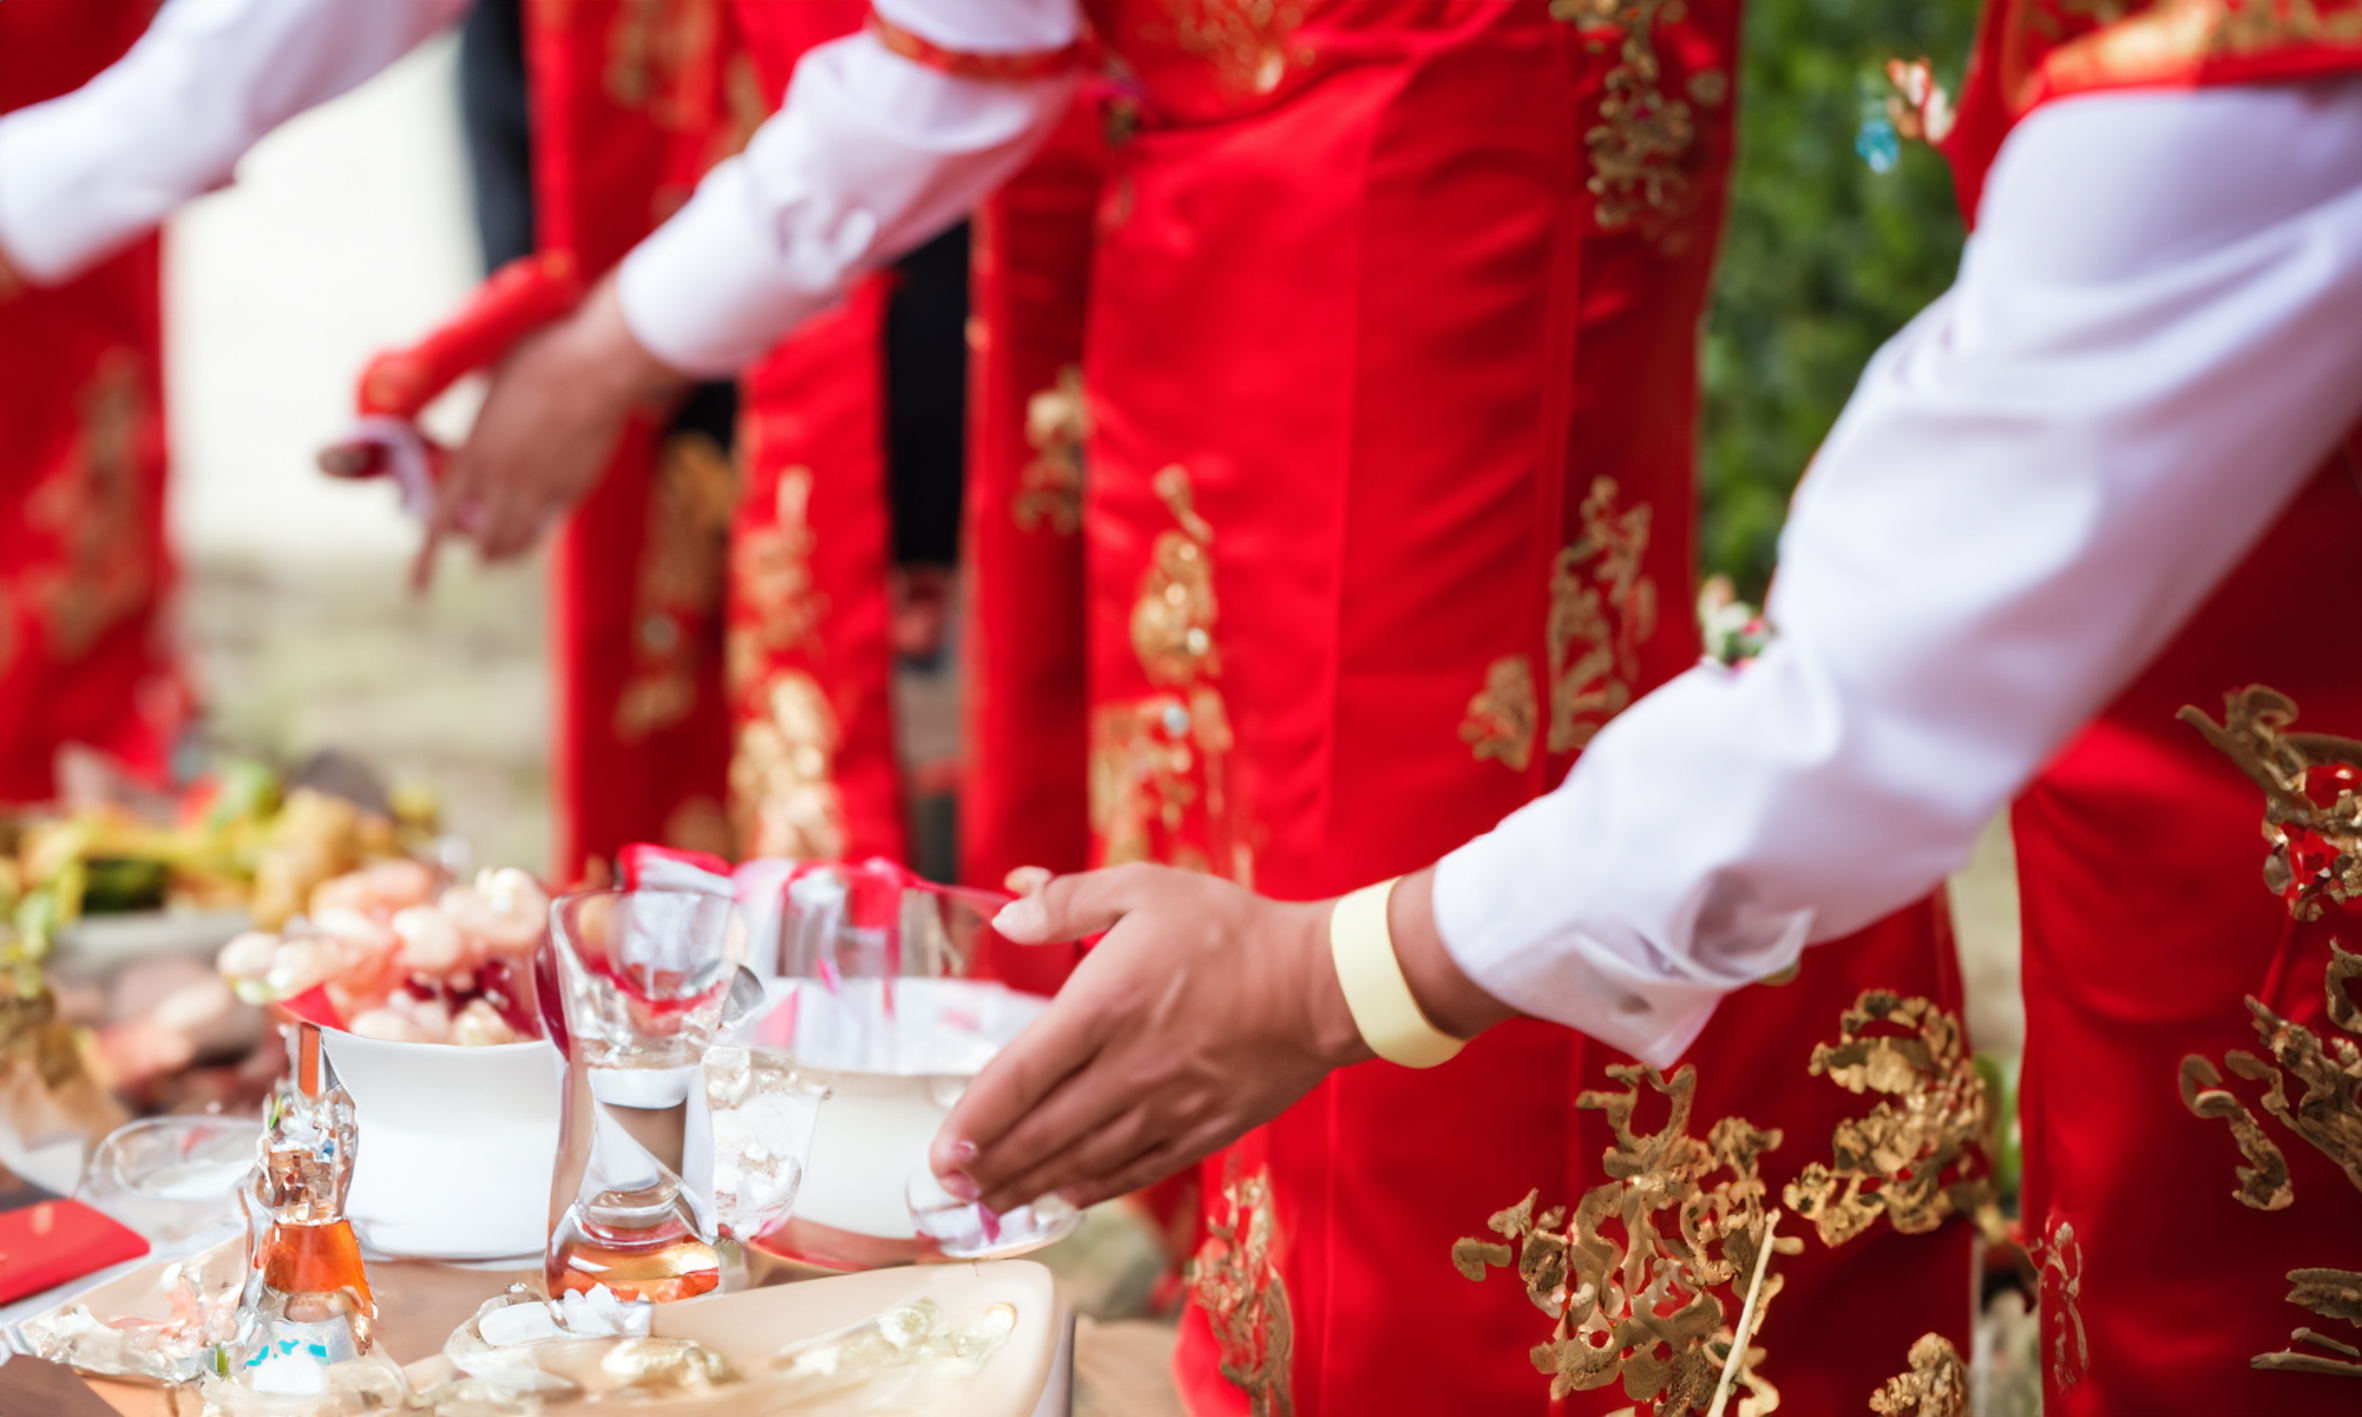 中国婚礼行业：创造属于我们这个时代的新婚礼文化